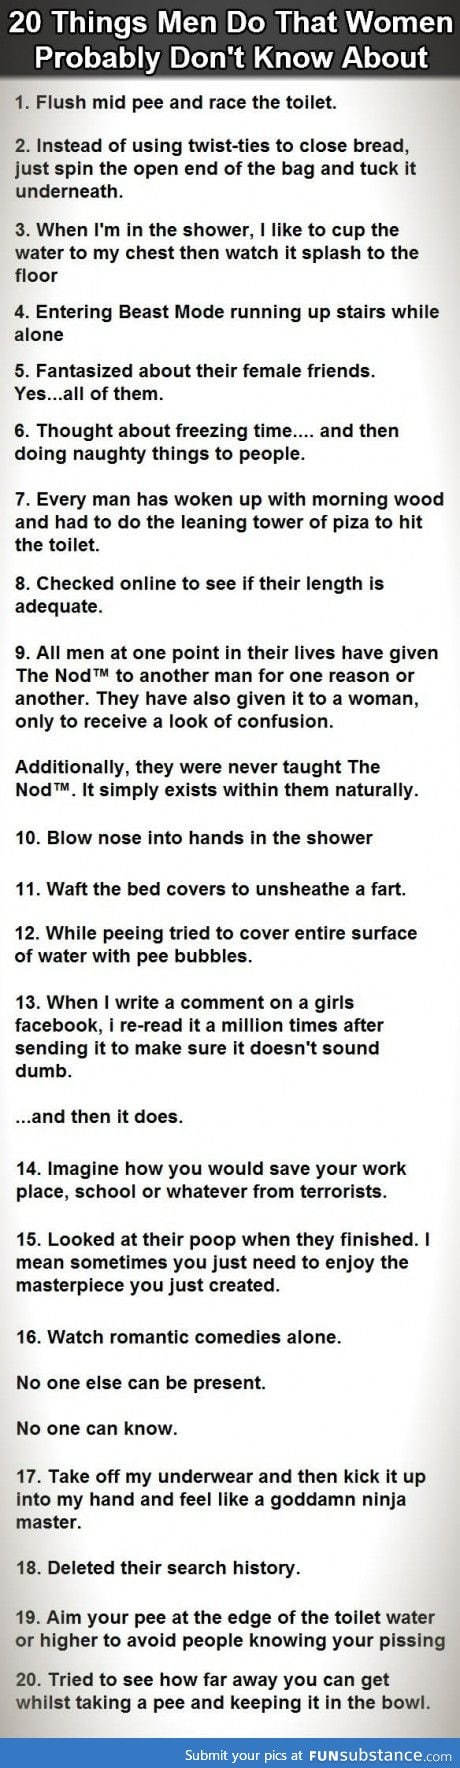 20 things that men do